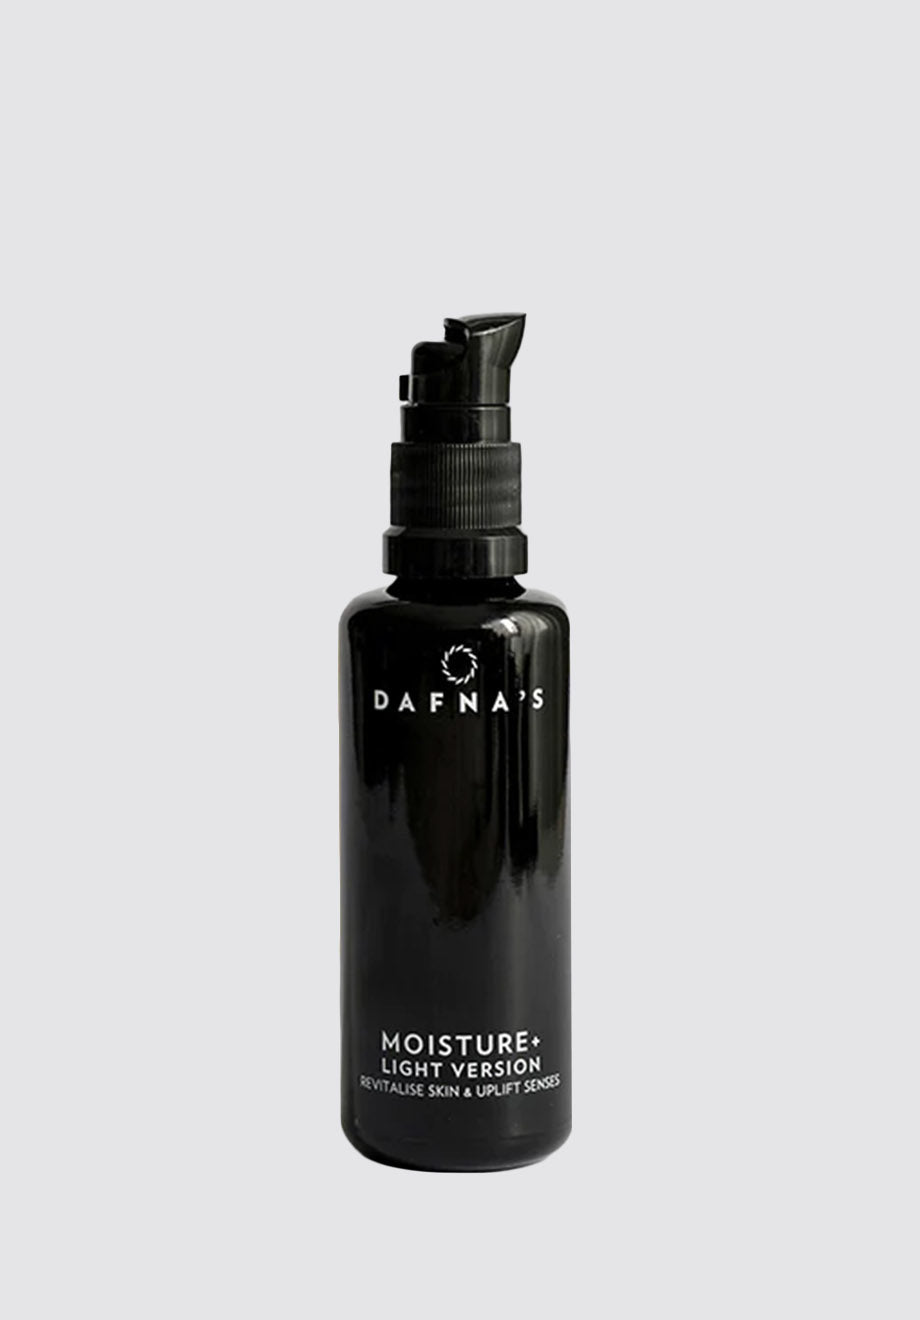 Moisture + Light Version – Revitalise Skin & Uplift Senses | 50ml